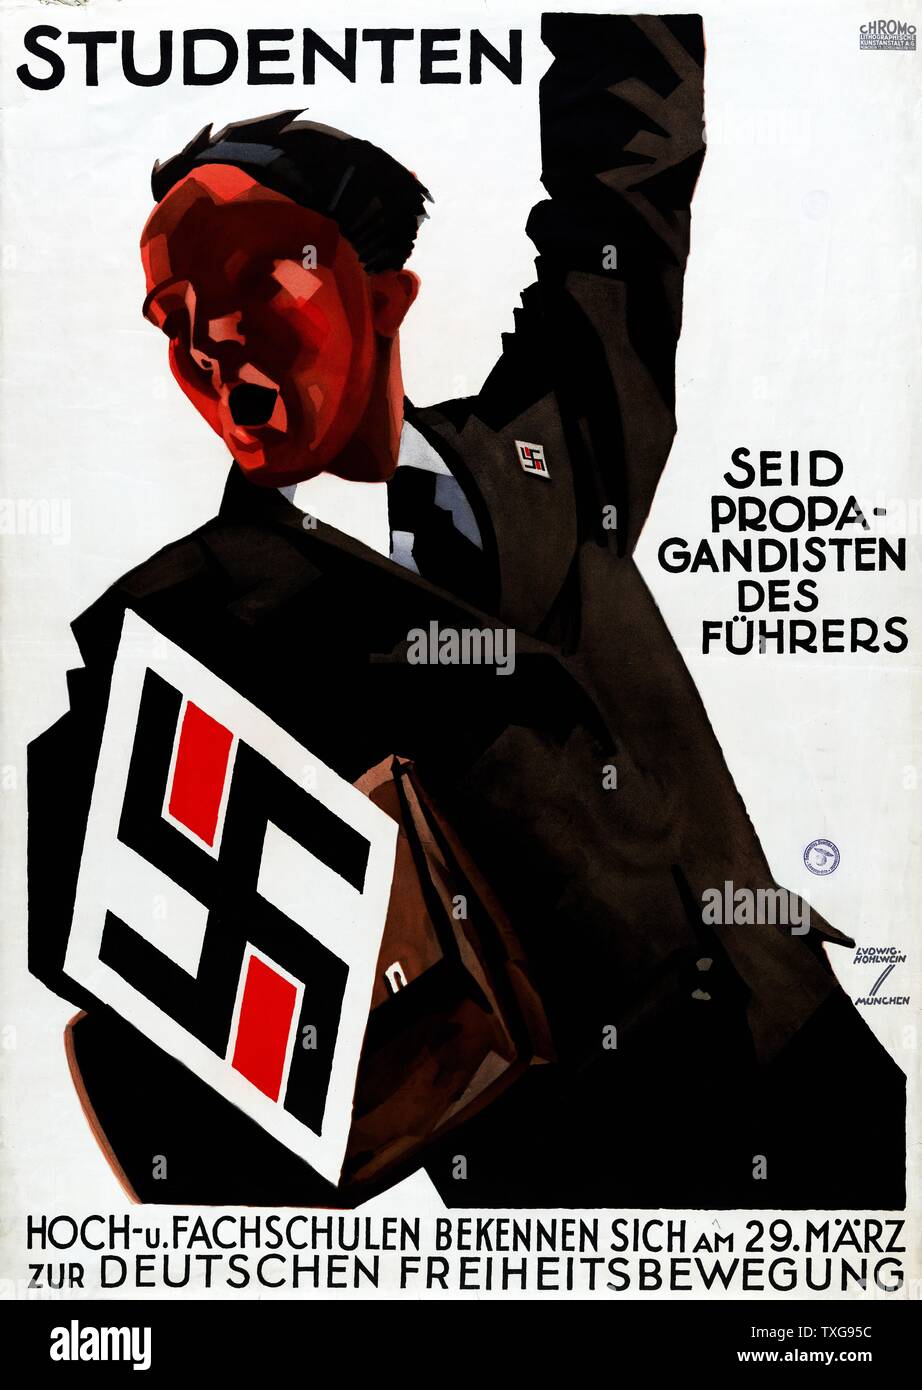 Propaganda nazista poster : un uomo, braccio sinistro sollevato, invita gli studenti a essere propagandisti per Führer (Hitler). Gran croce uncinata, sinistra, specchiata sul badge di risvolto Foto Stock